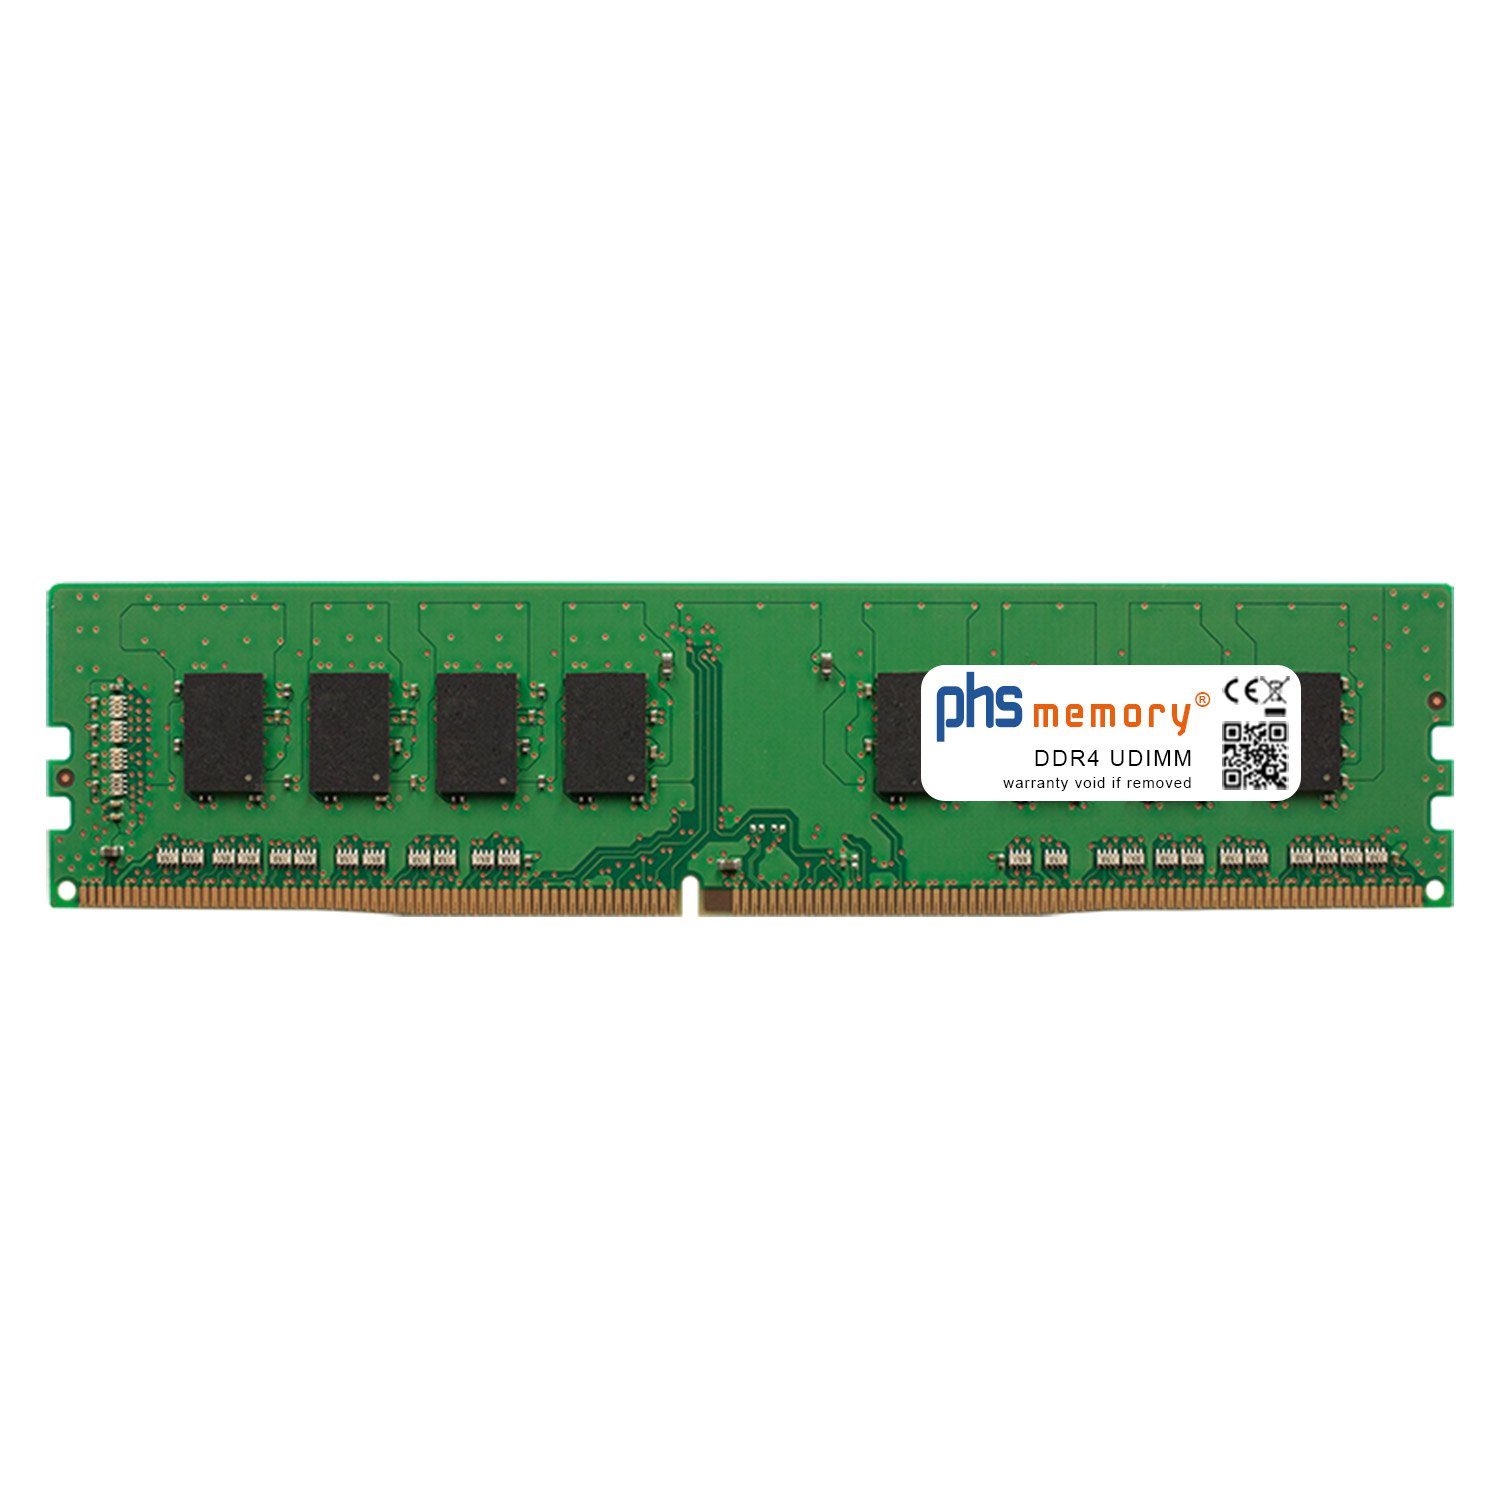 PHS-memory RAM für Captiva Power Starter R67-196 Arbeitsspeicher